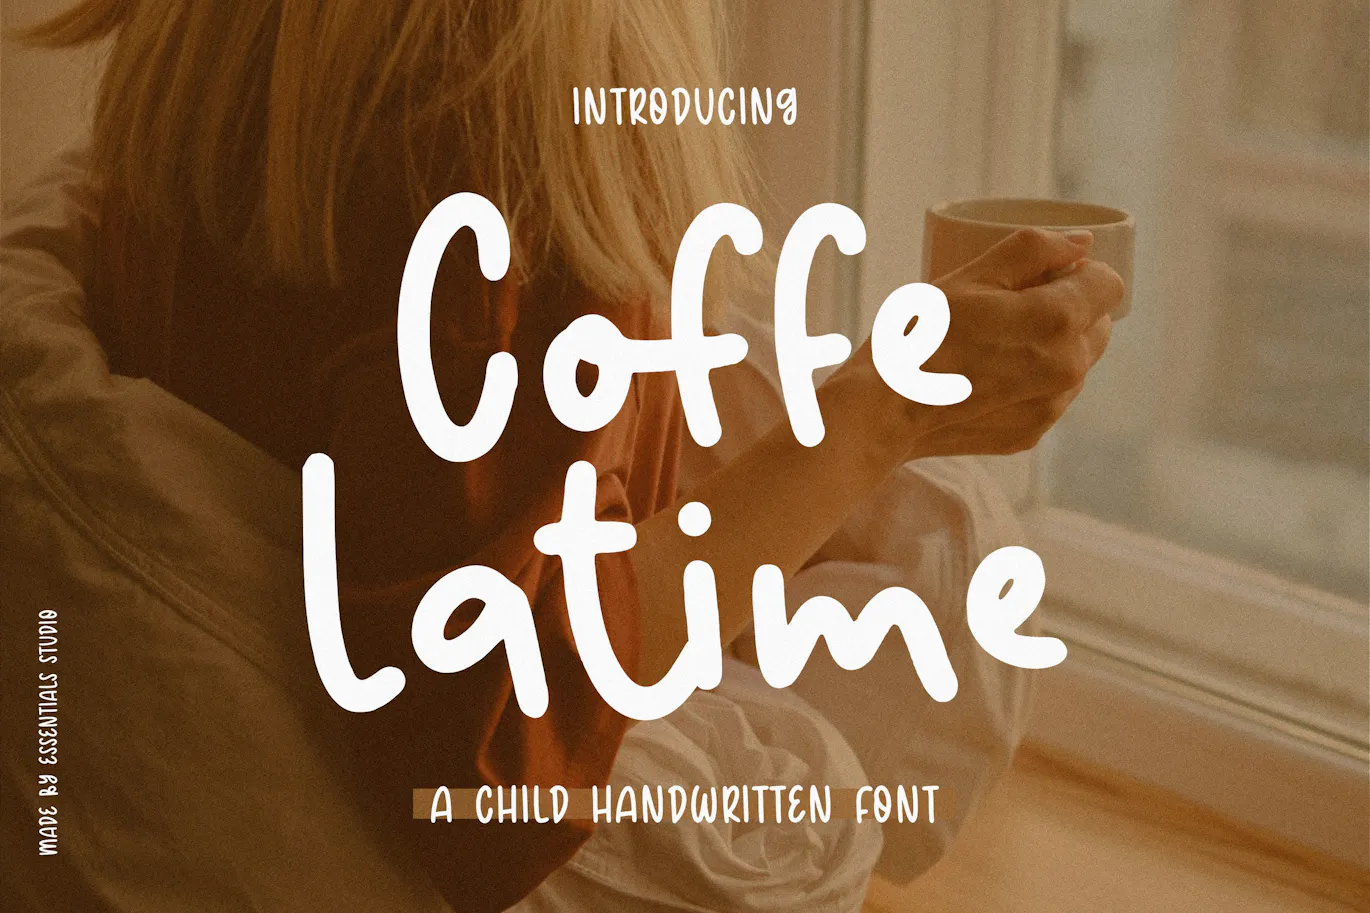 非常适合产品包装的英文字体 - Coffee Latime